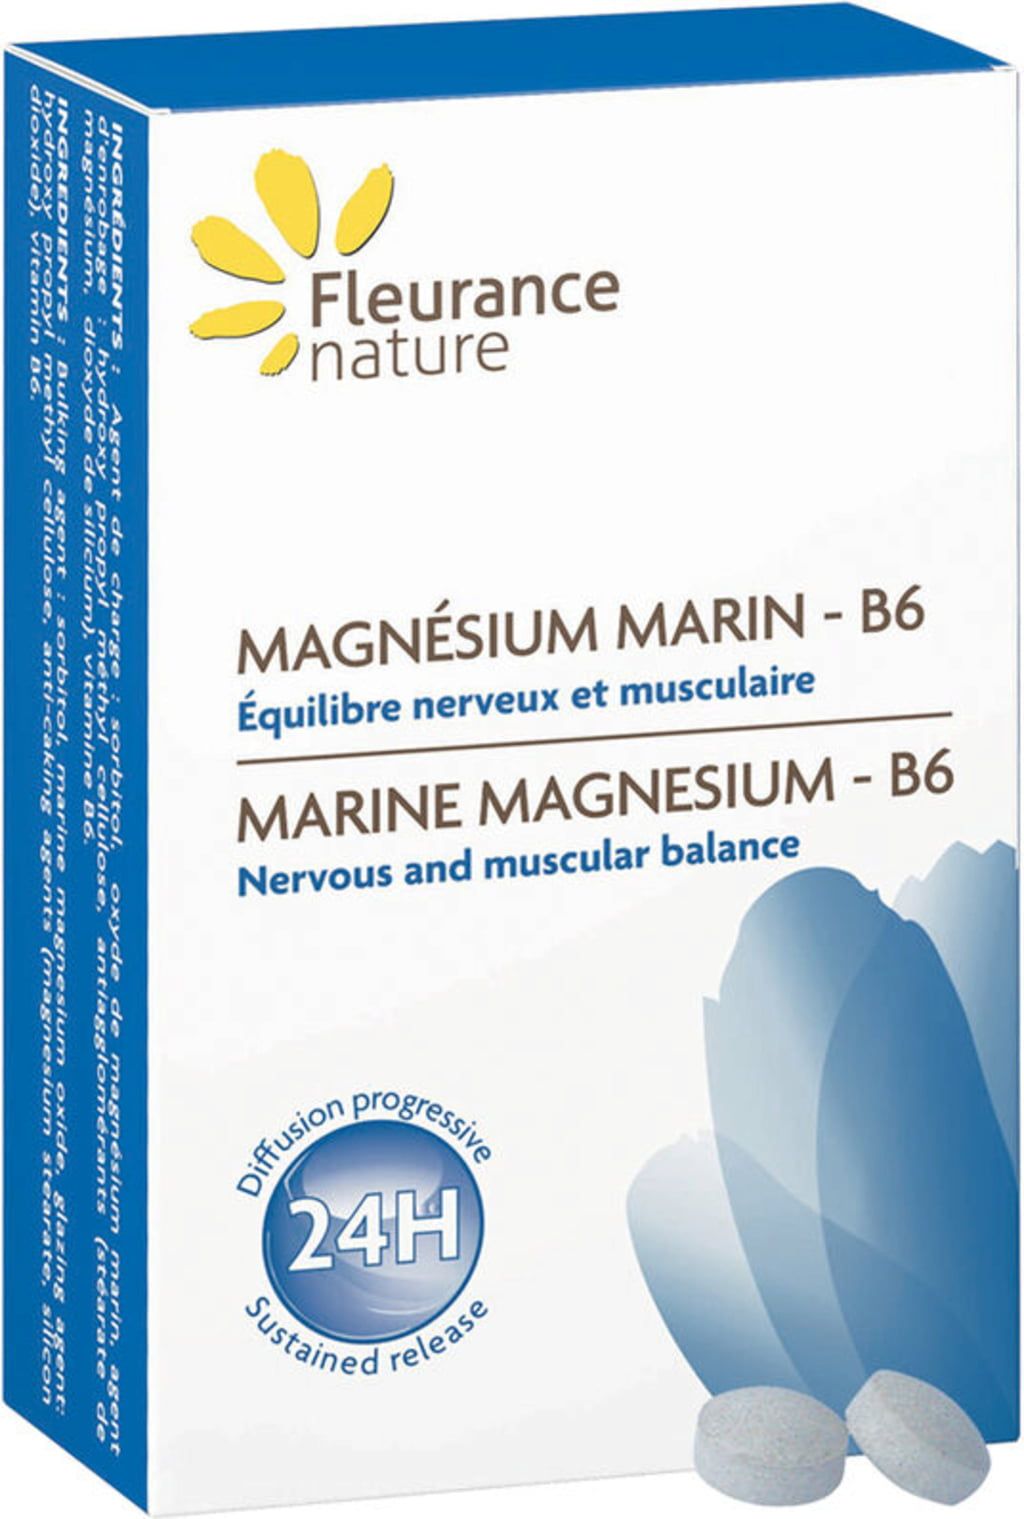 Fleurance Nature Magnésium Marin - B6, 60 comprimés - Ayurveda 101 ...